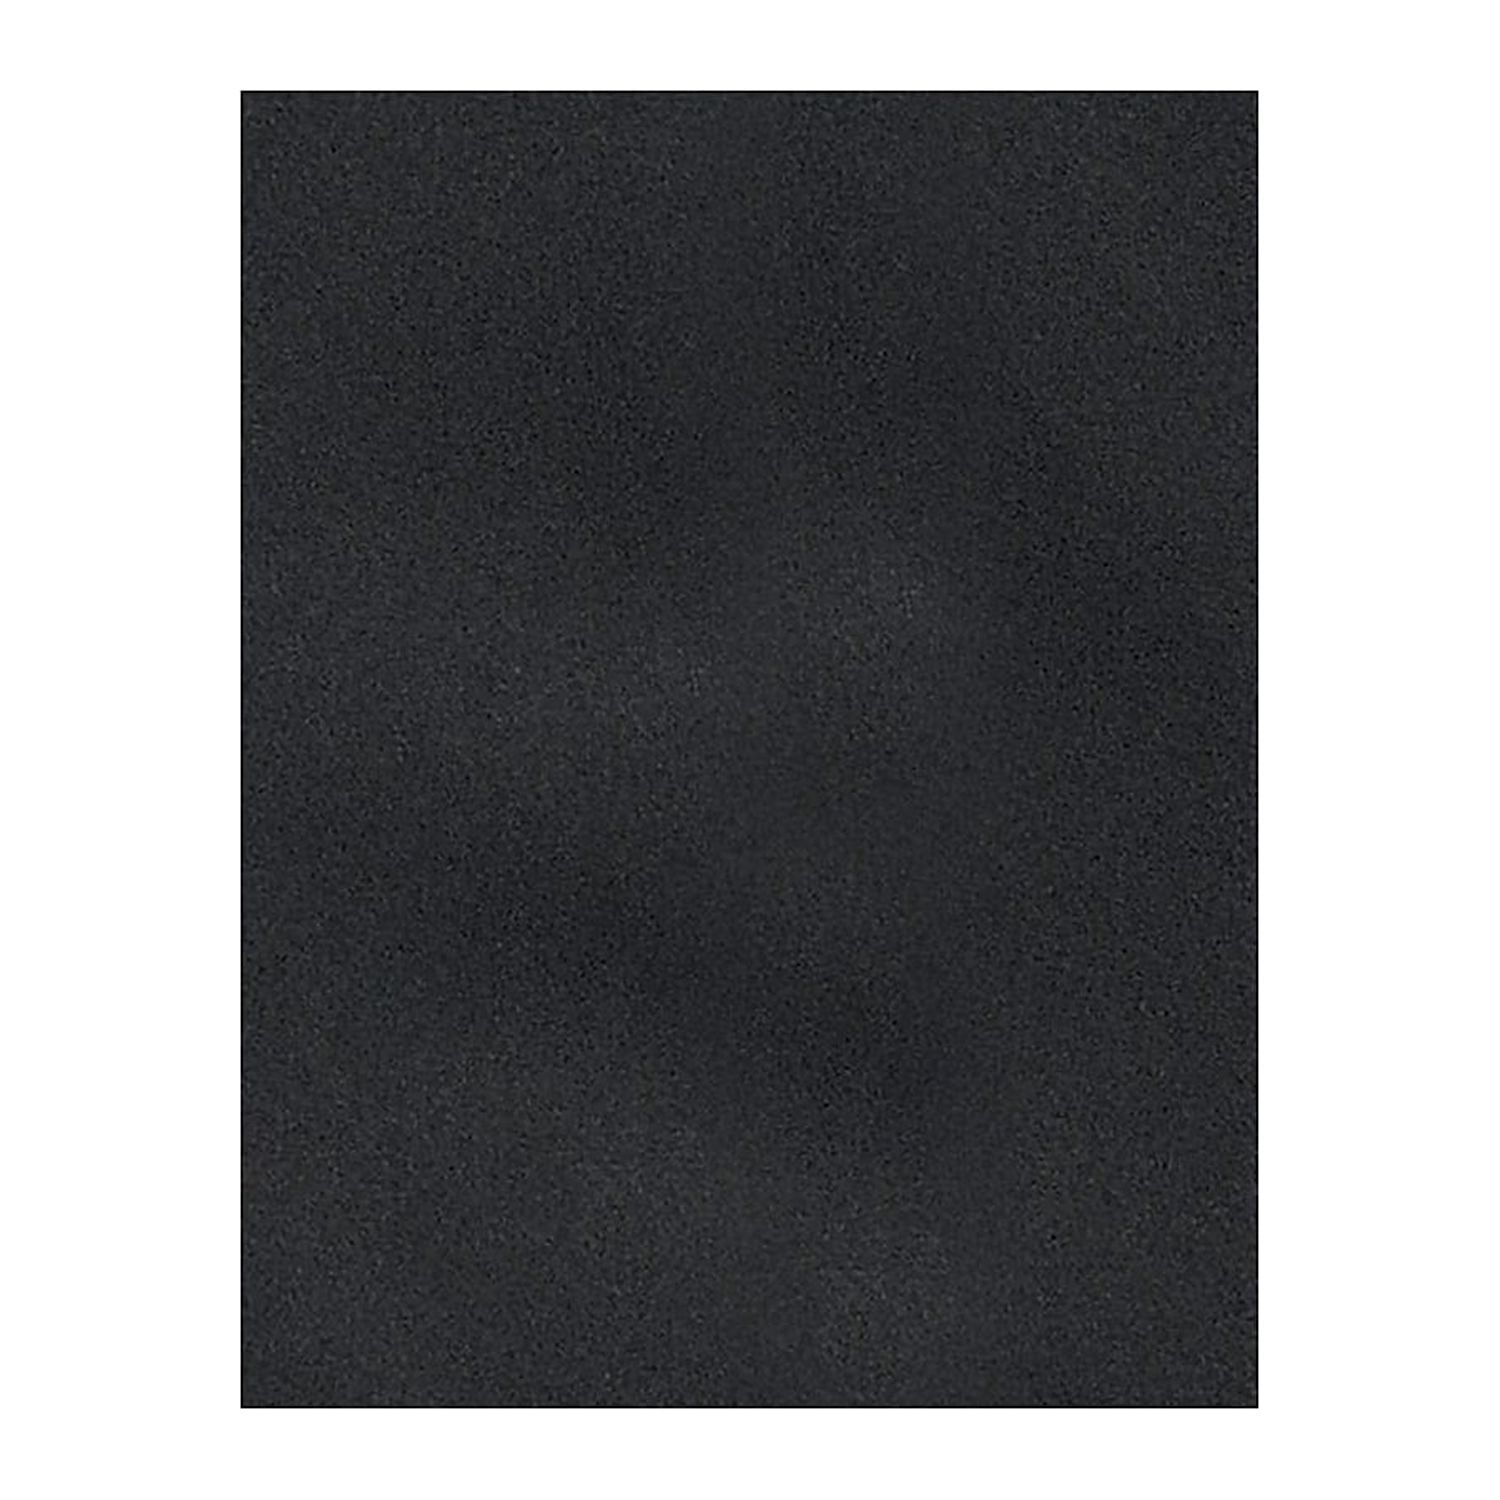 8 1/2 x 11 Cardstock - Midnight Black (250 Qty.) 